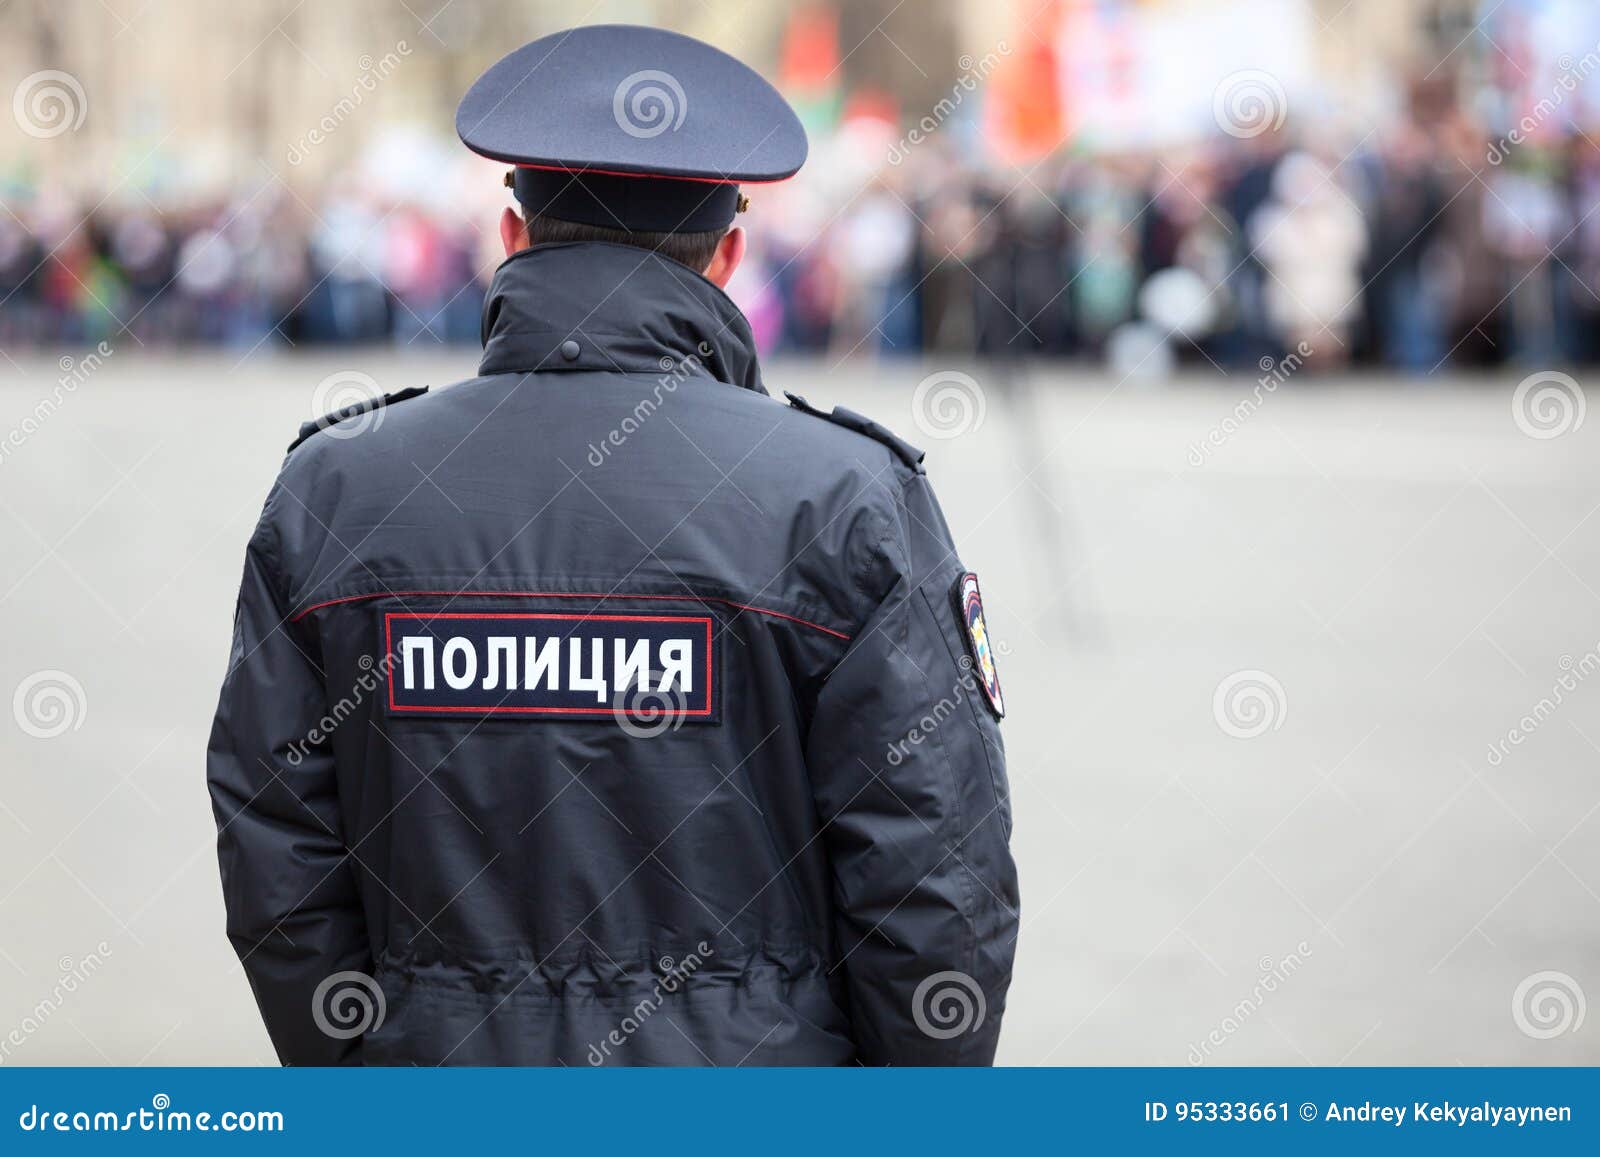 Uniforme Da Polícia Russa Com Algemas Em Inglês Tradução Policial Foto de  Stock - Imagem de patrulhas, oficial: 209674836